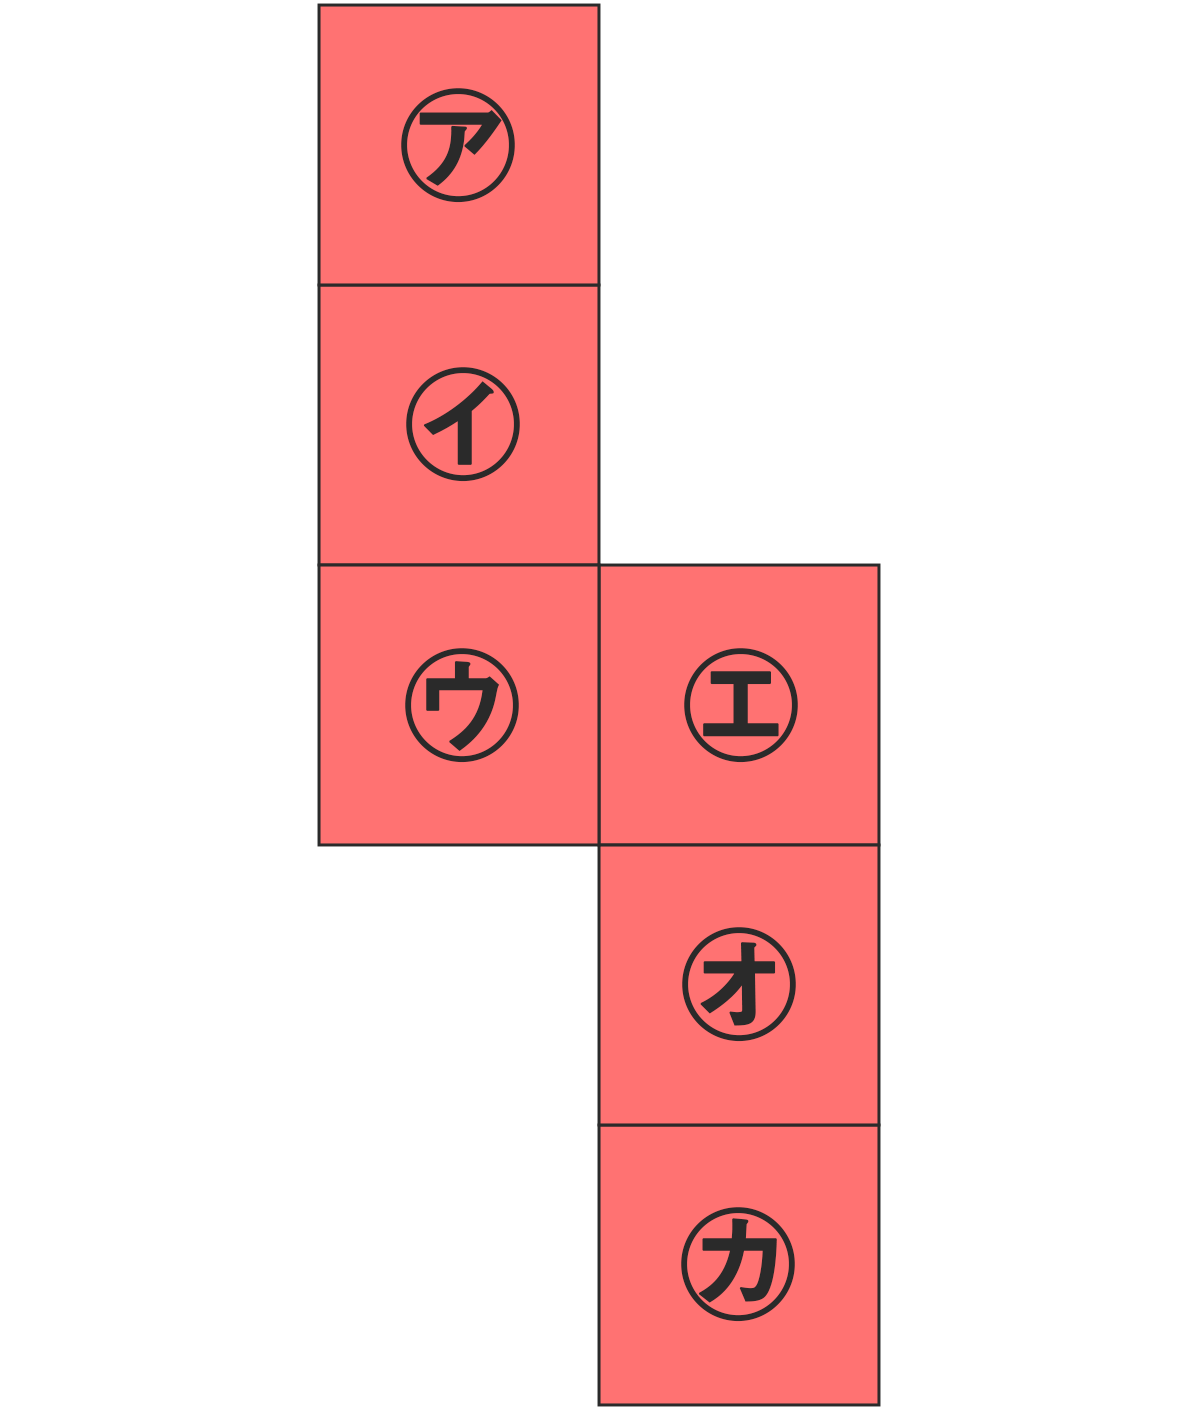 立方体の展開図、問9